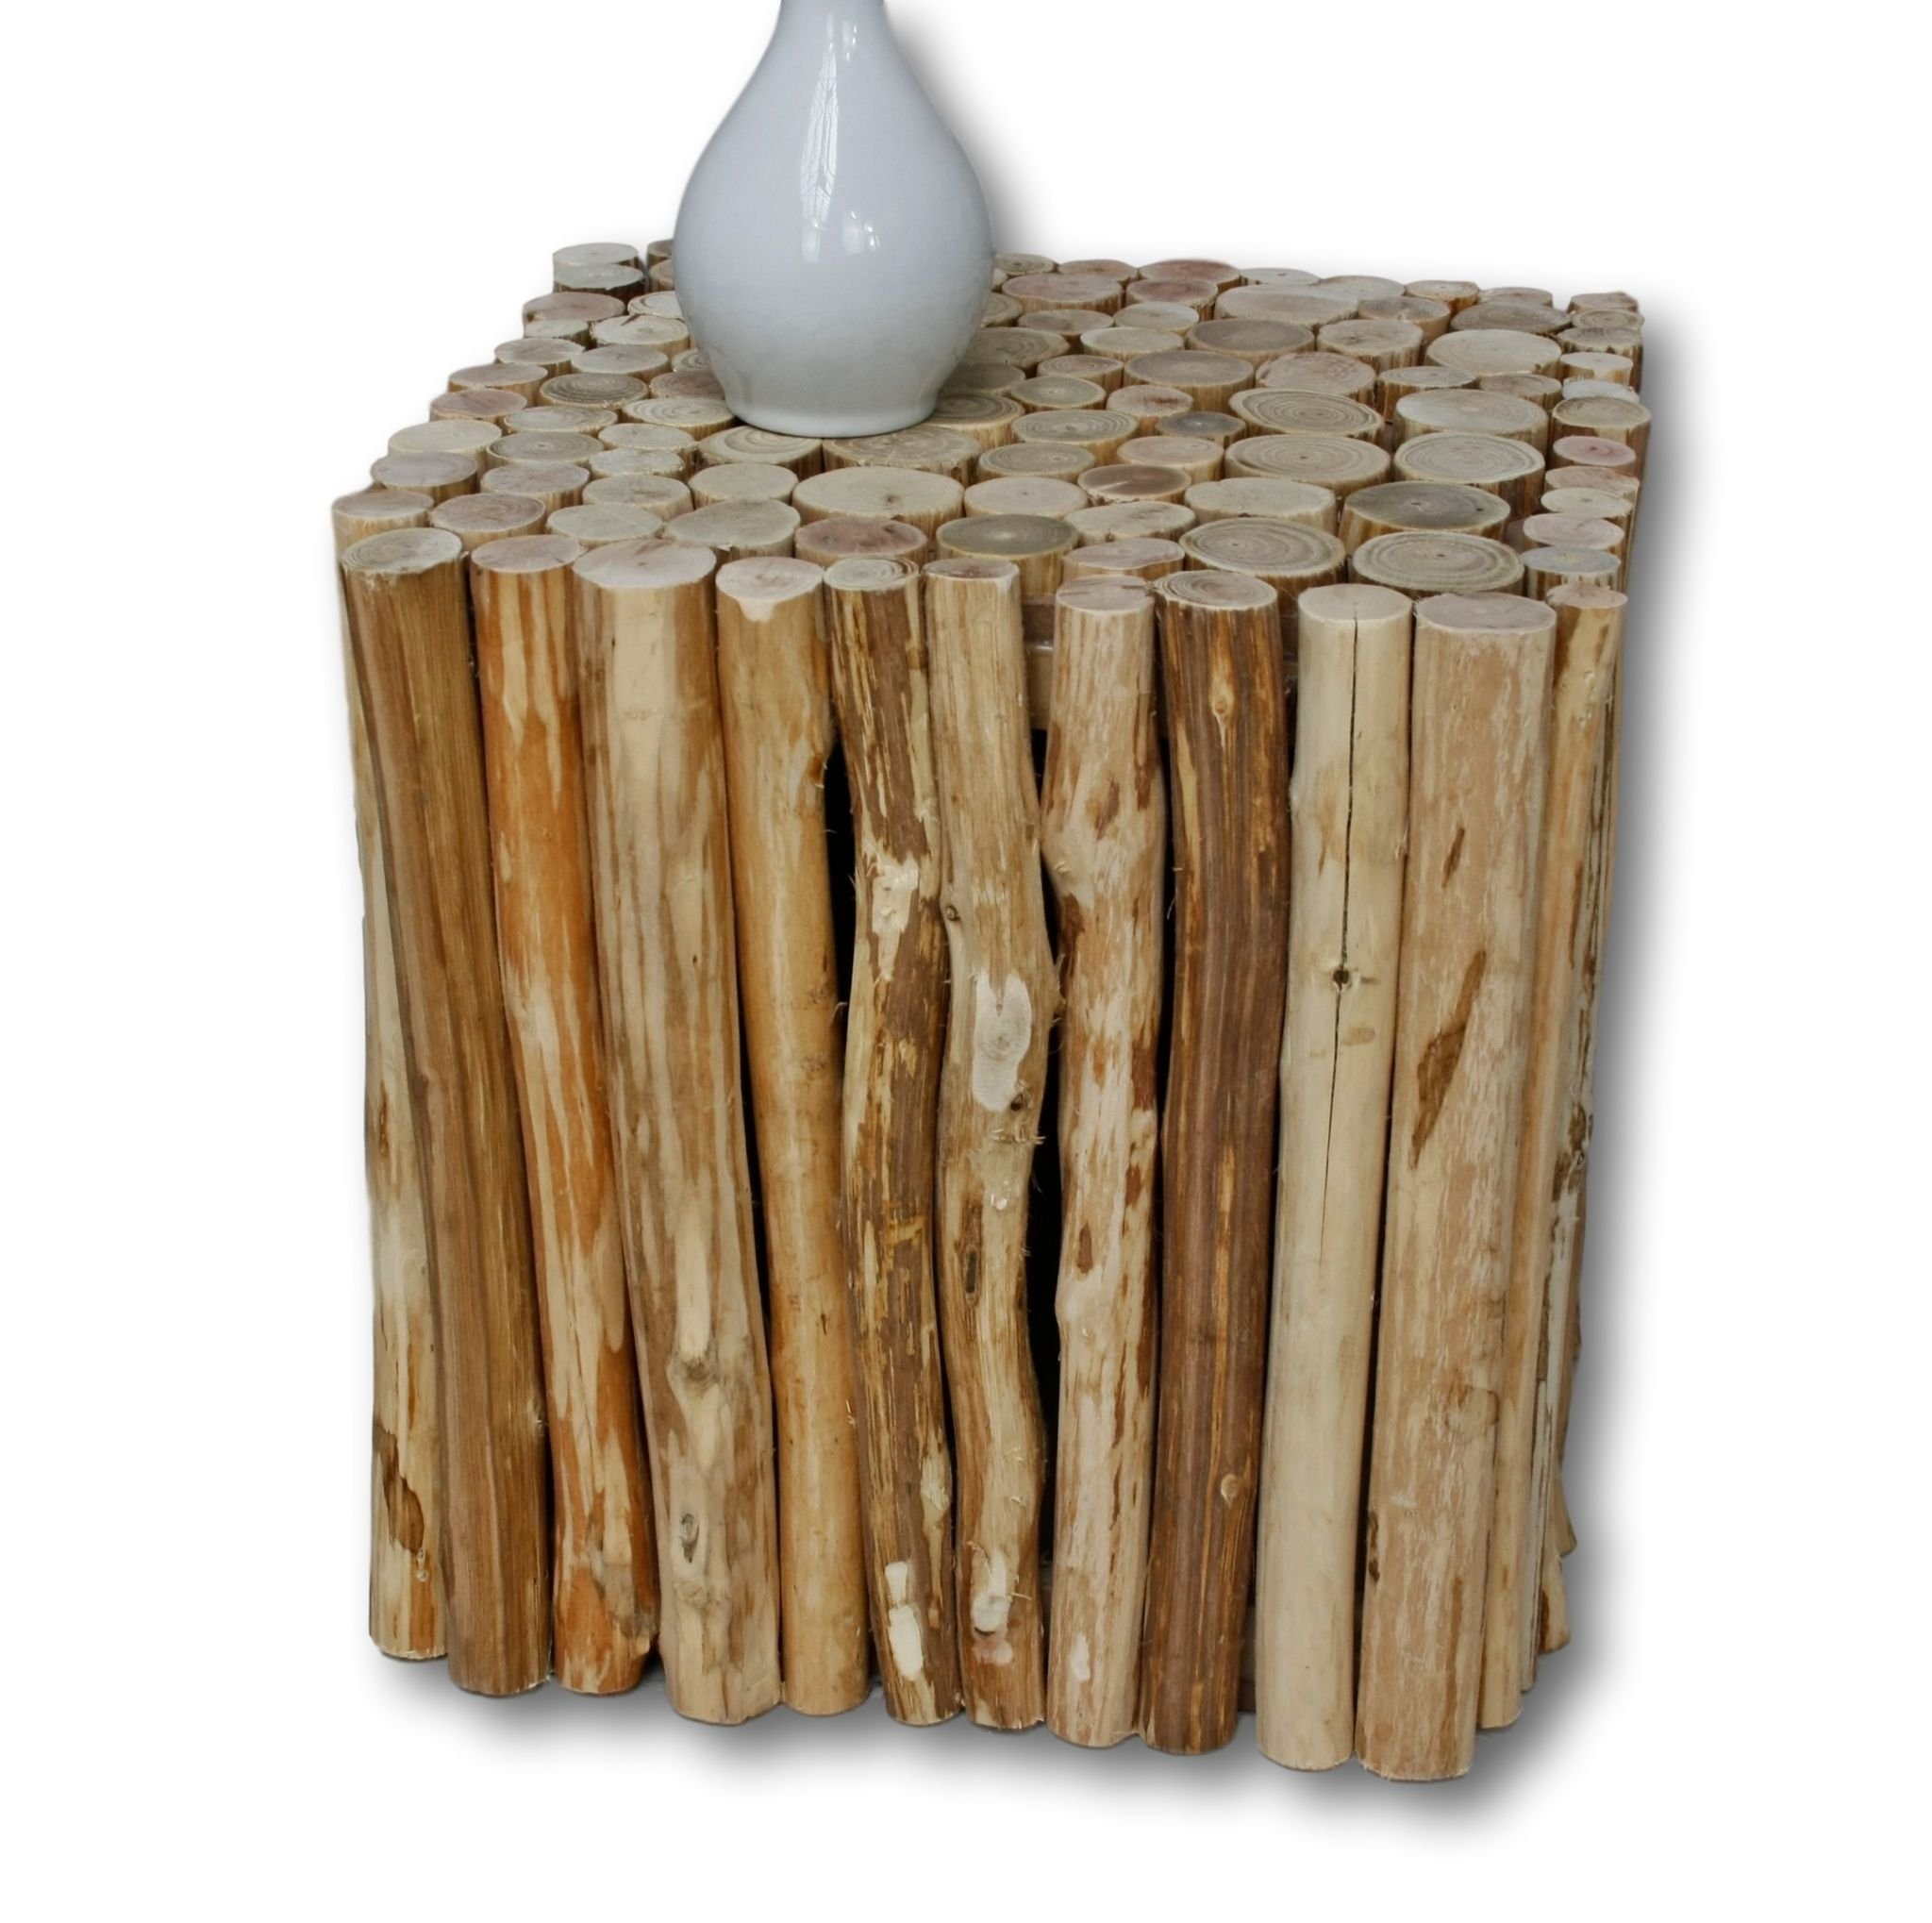 elbmöbel Beistelltisch Hocker Beistelltisch Holz Eckig (FALSCH), Beistelltisch: Ablage 30x30x30 cm holz Wooden